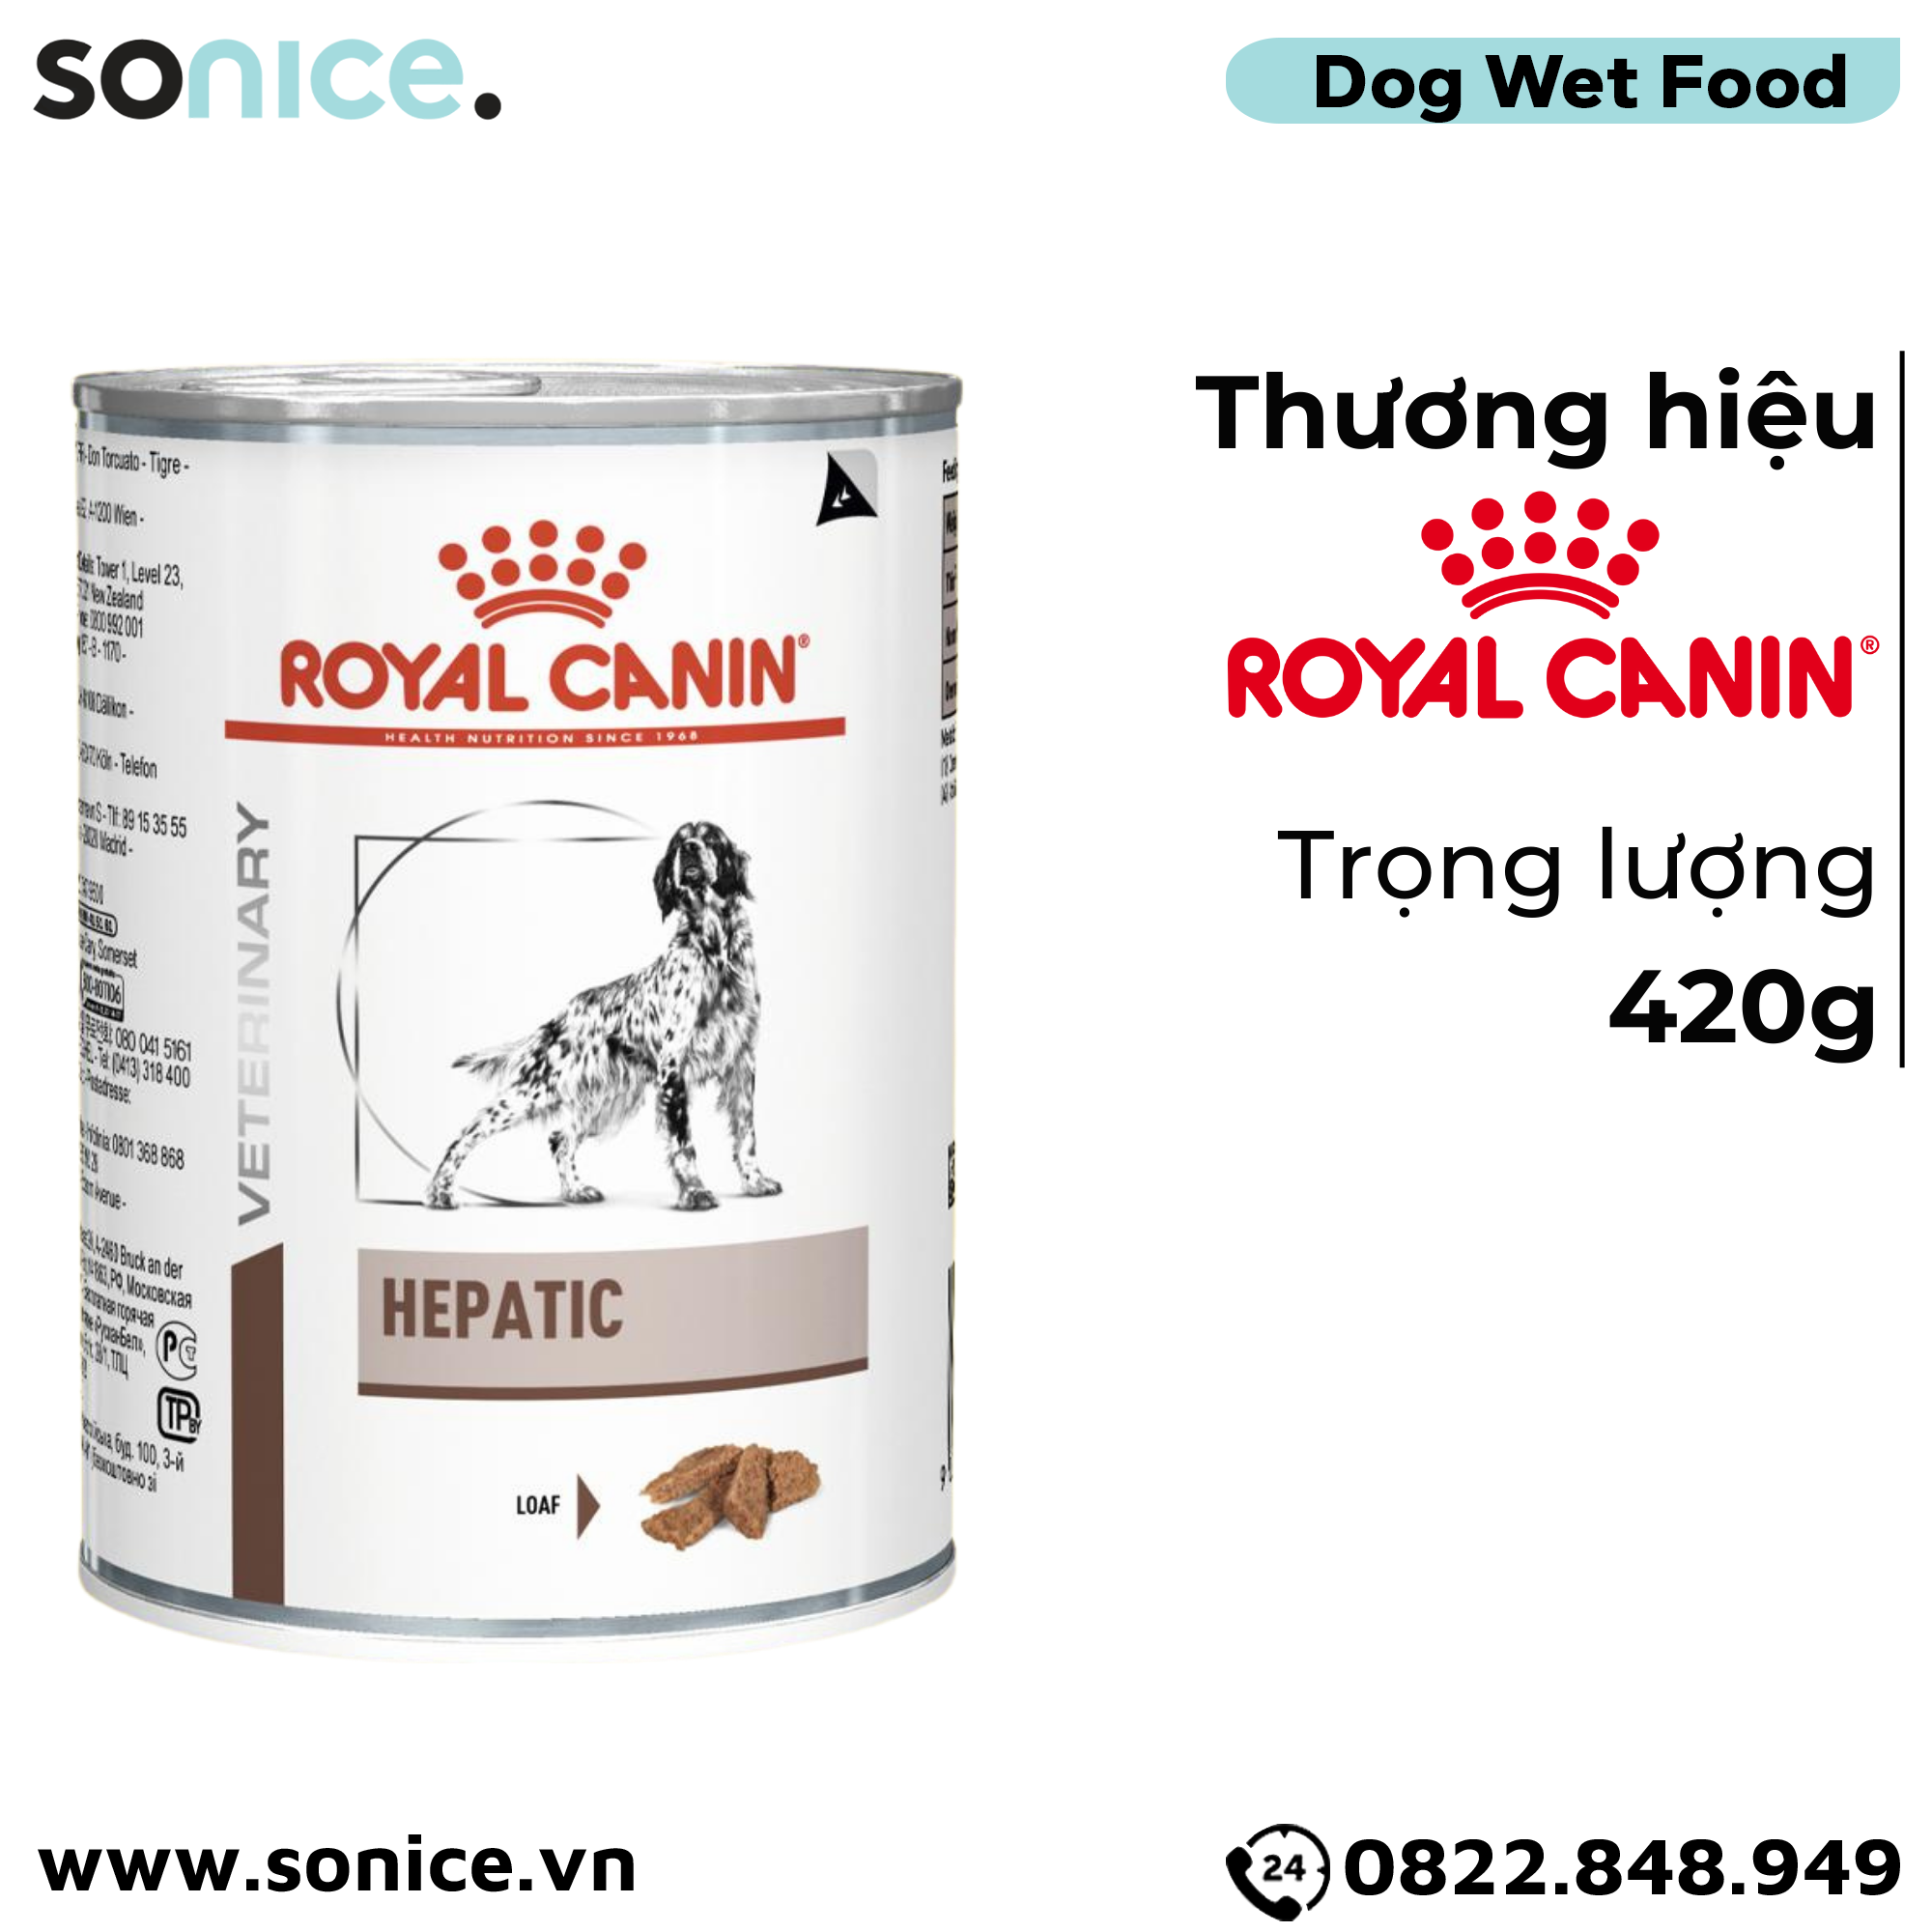  Pate chó Royal Canin Hepatic Loaf 420g - Hỗ trợ chức năng gan SONICE. 